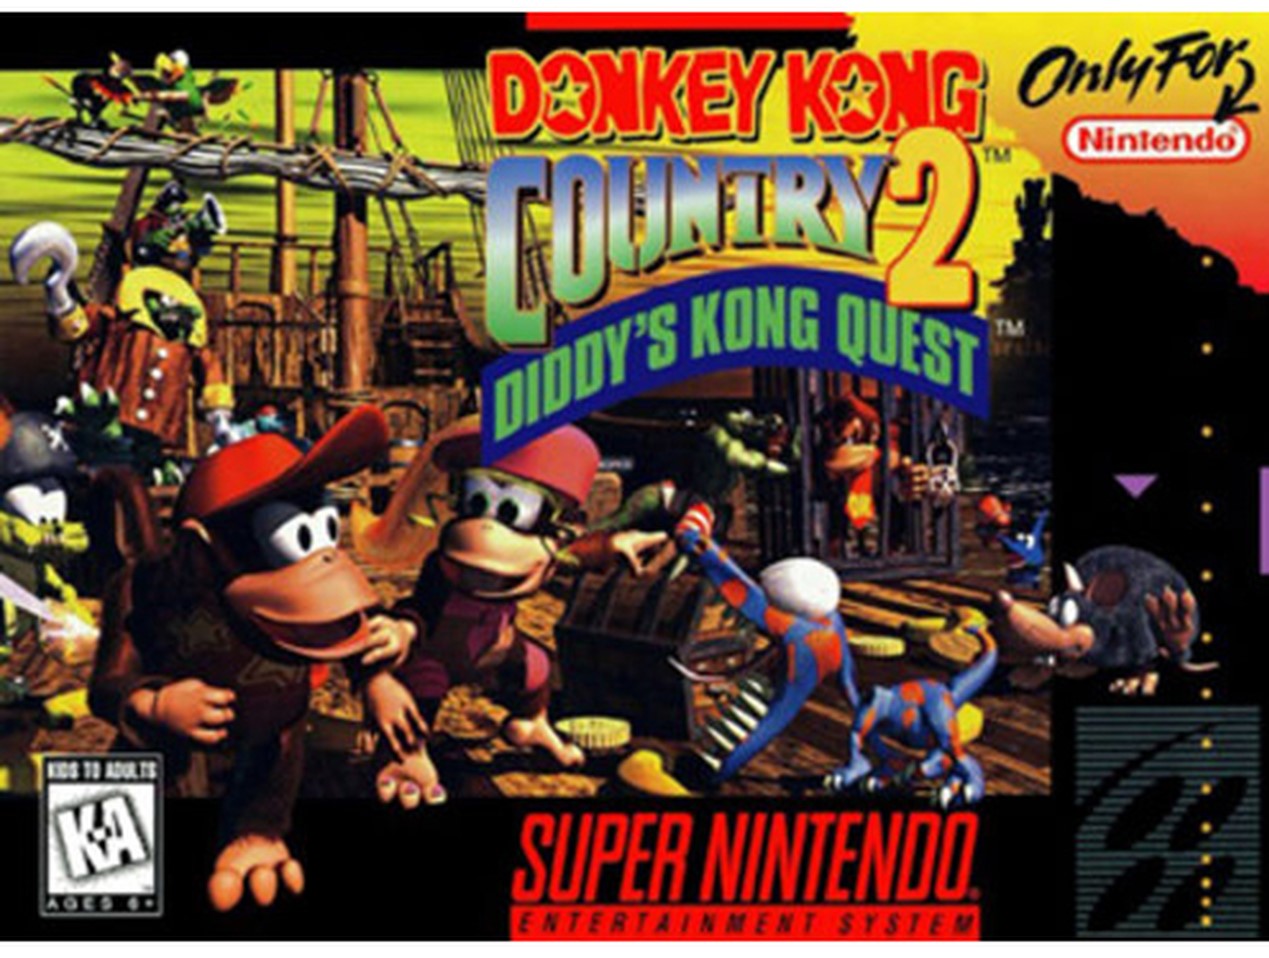 Donkey Kong Country 2 Diddys Kong Quest (Csak a kazetta) - Super Nintendo Entertainment System Játékok